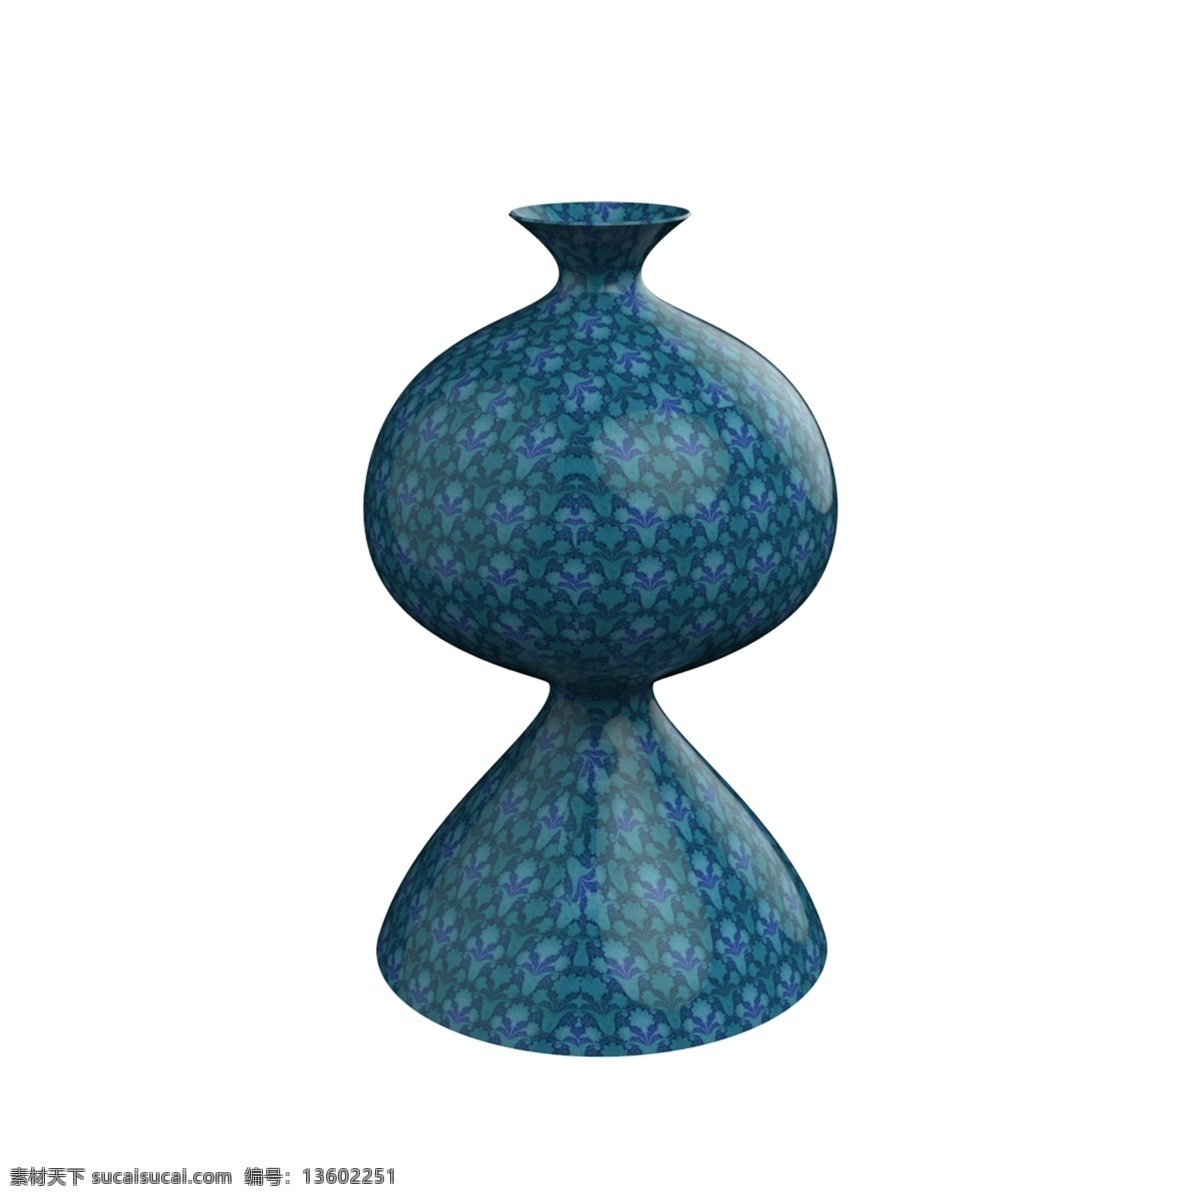 花瓶摆件 家装花瓶 花瓶 插花 容器 陶瓷花瓶 陶瓷摆件 装饰品 蓝色花瓶 瓶子